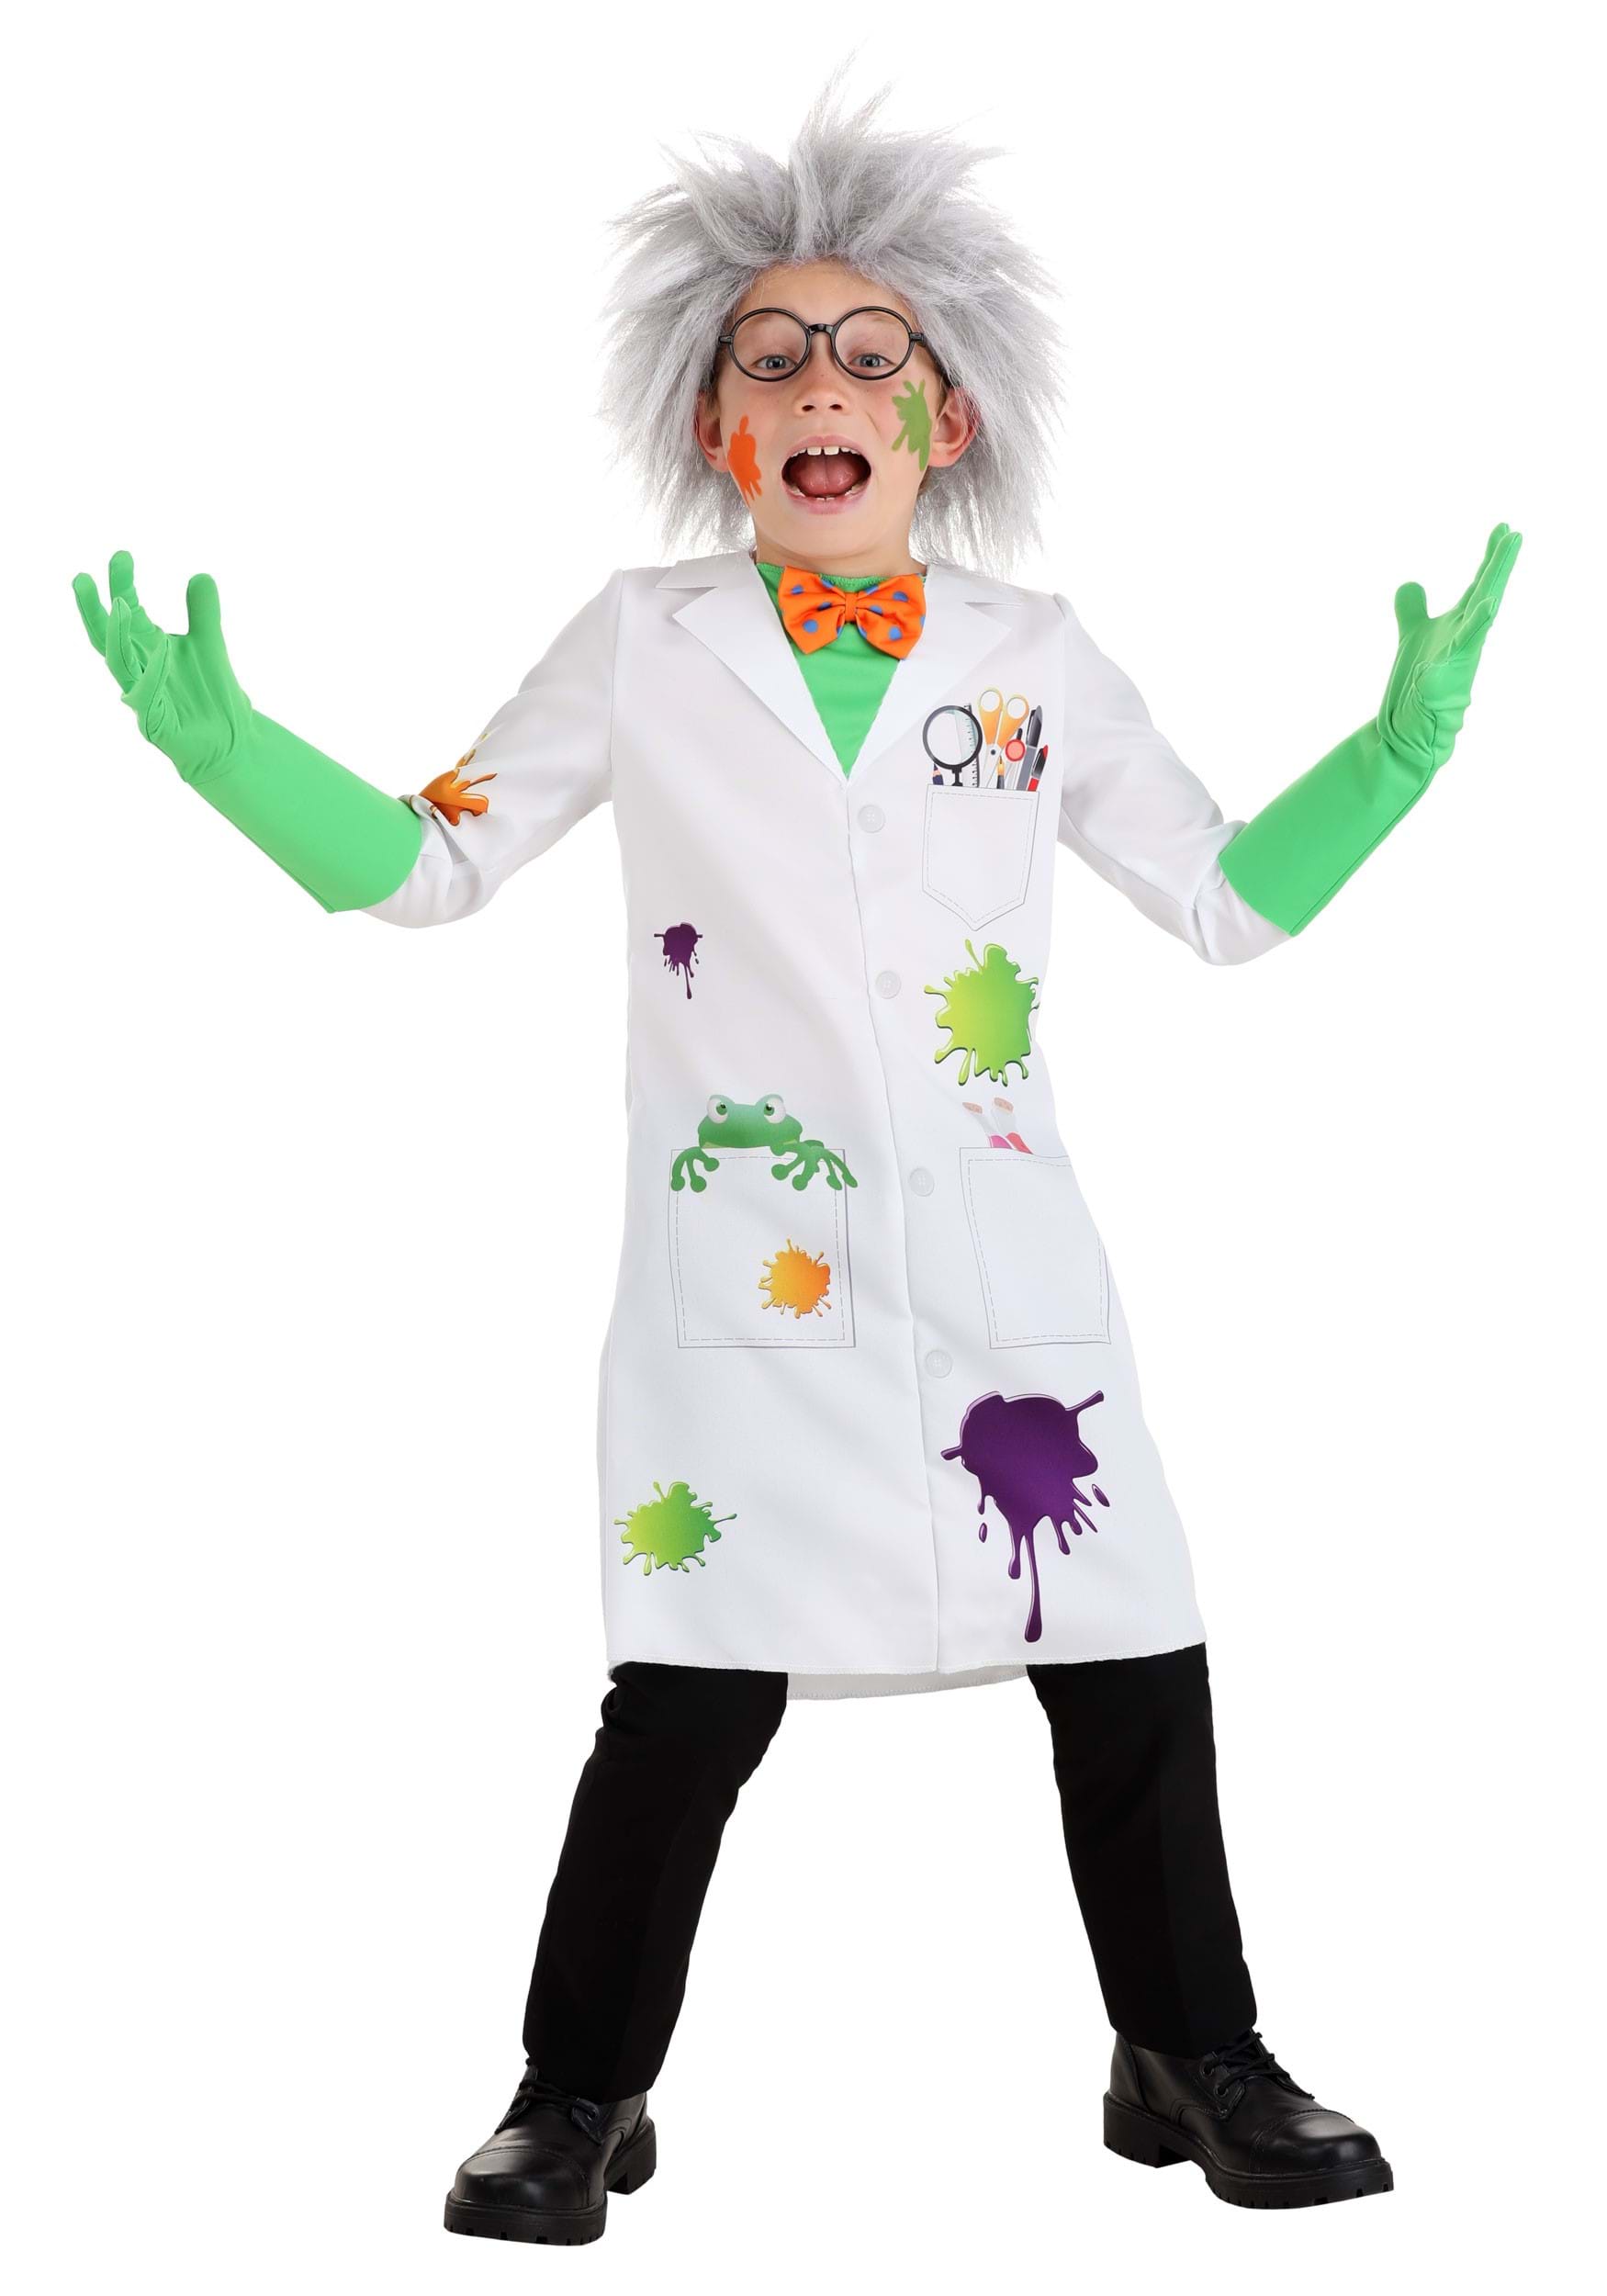 Raving Mad Scientist Kid's Costume